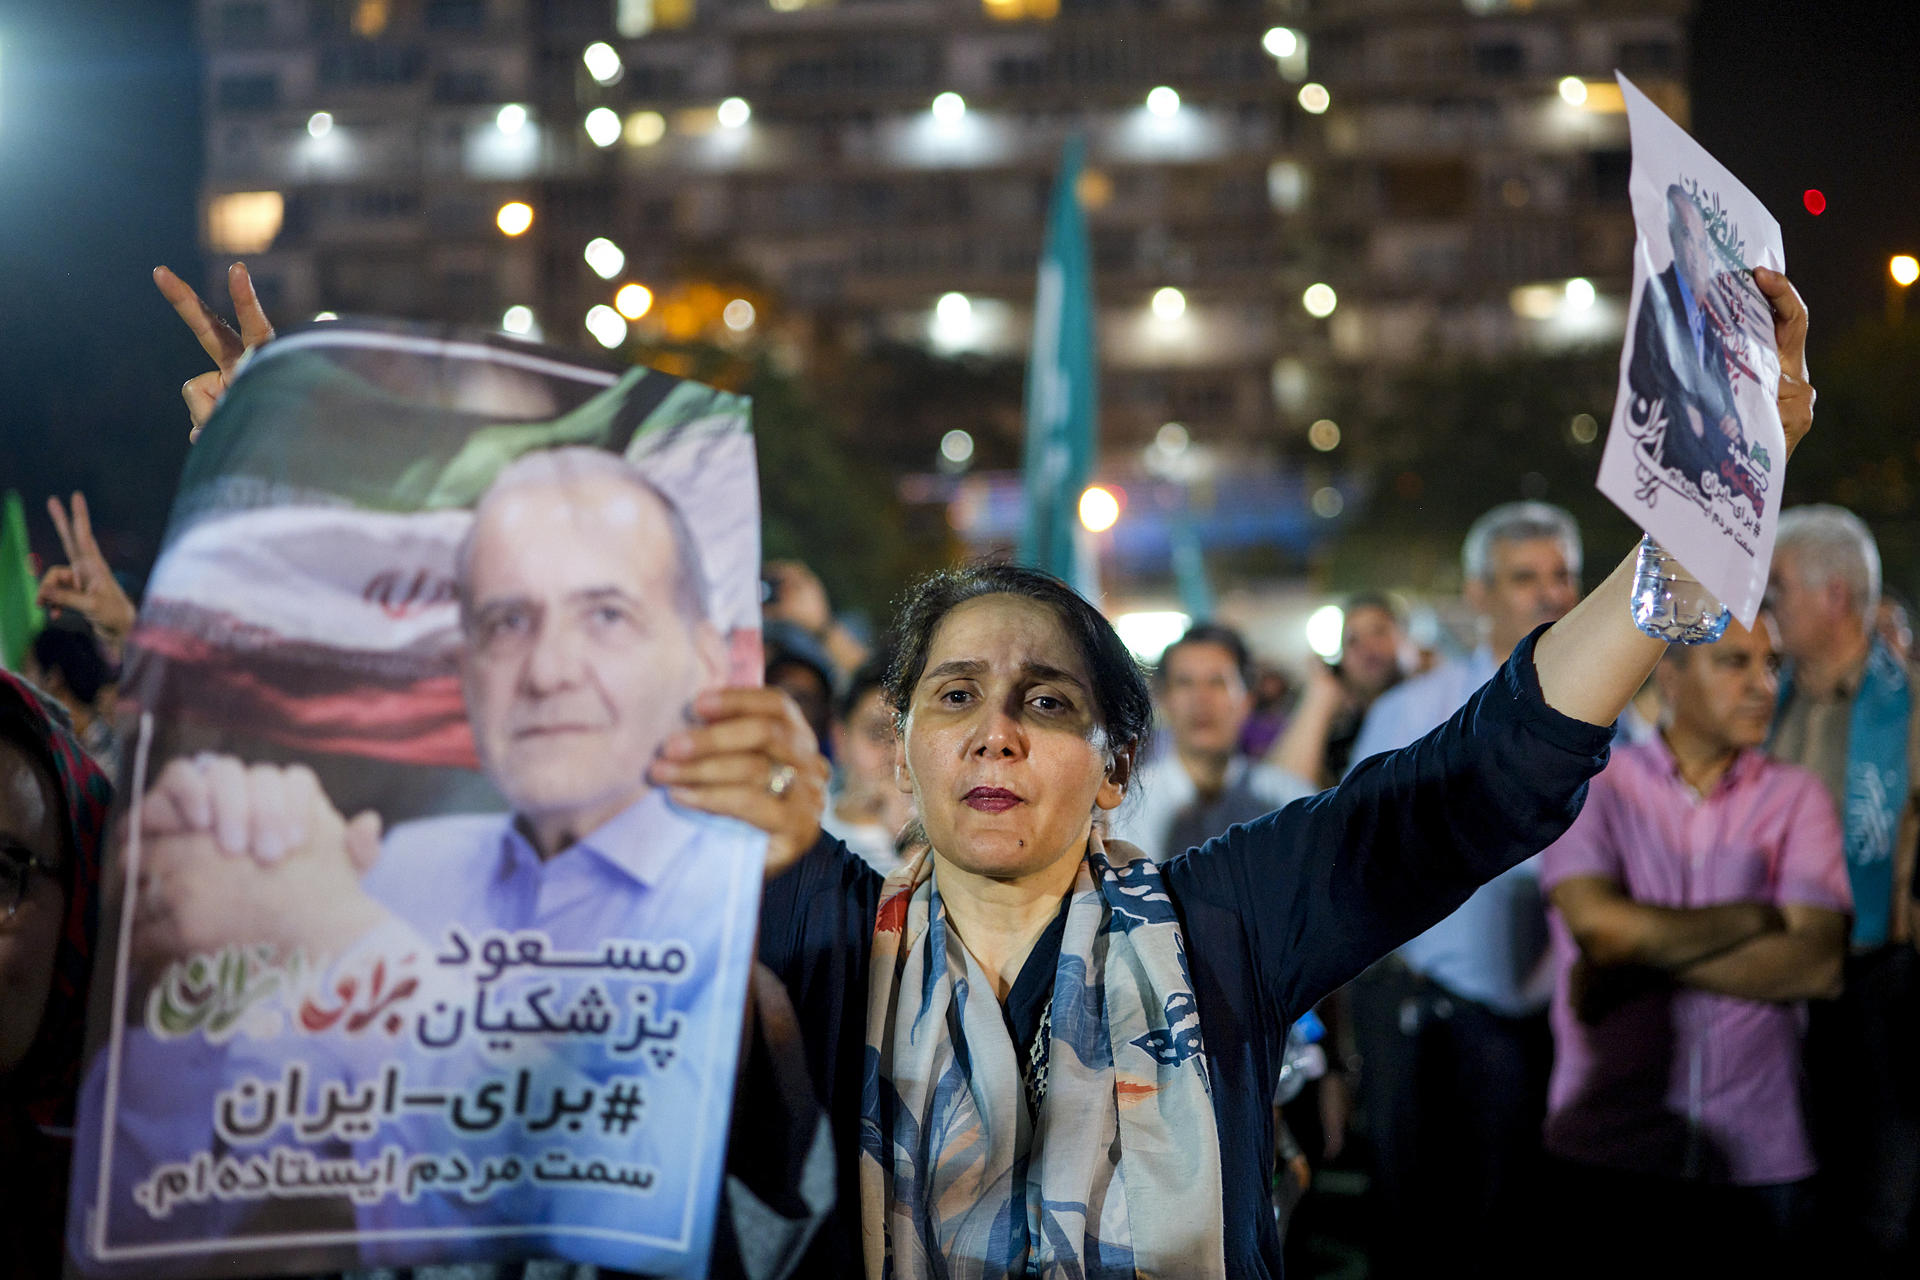 Una mujer participa en el último mitin del candidato a la presidencia iraní el reformista Masoud Pezeshkian en Teherán. EFE/Jaime León
